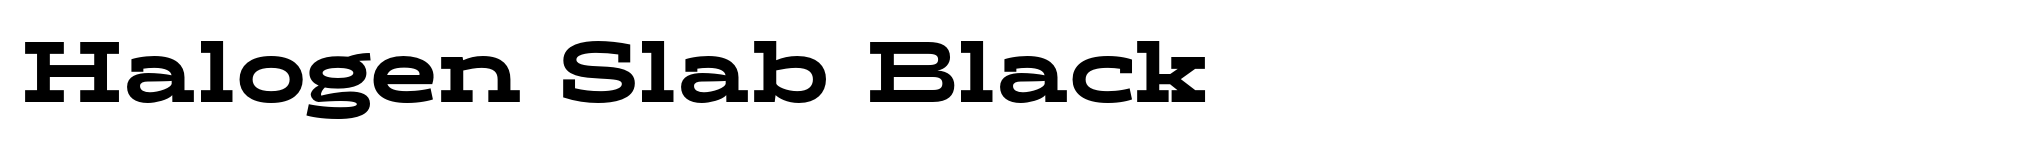 Halogen Slab Black image